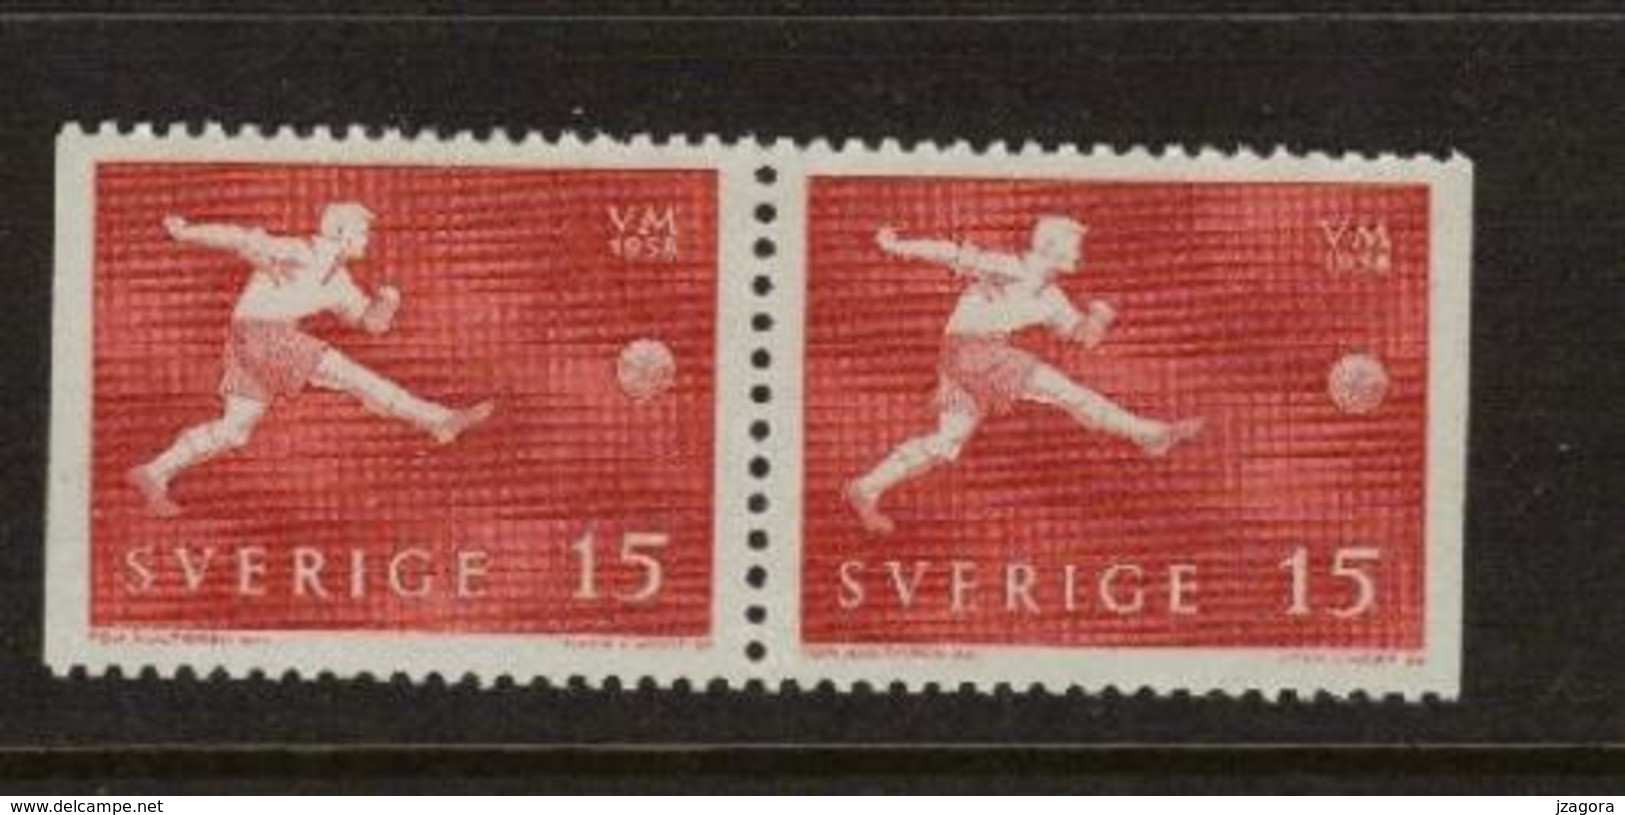 SOCCER FOOTBALL WORLD CHAMPIONSHIP - MUNDIAL 1958 - SWEDEN SCHWEDEN SUEDE MI 438 Dl\Dr MNH - 1958 – Zweden